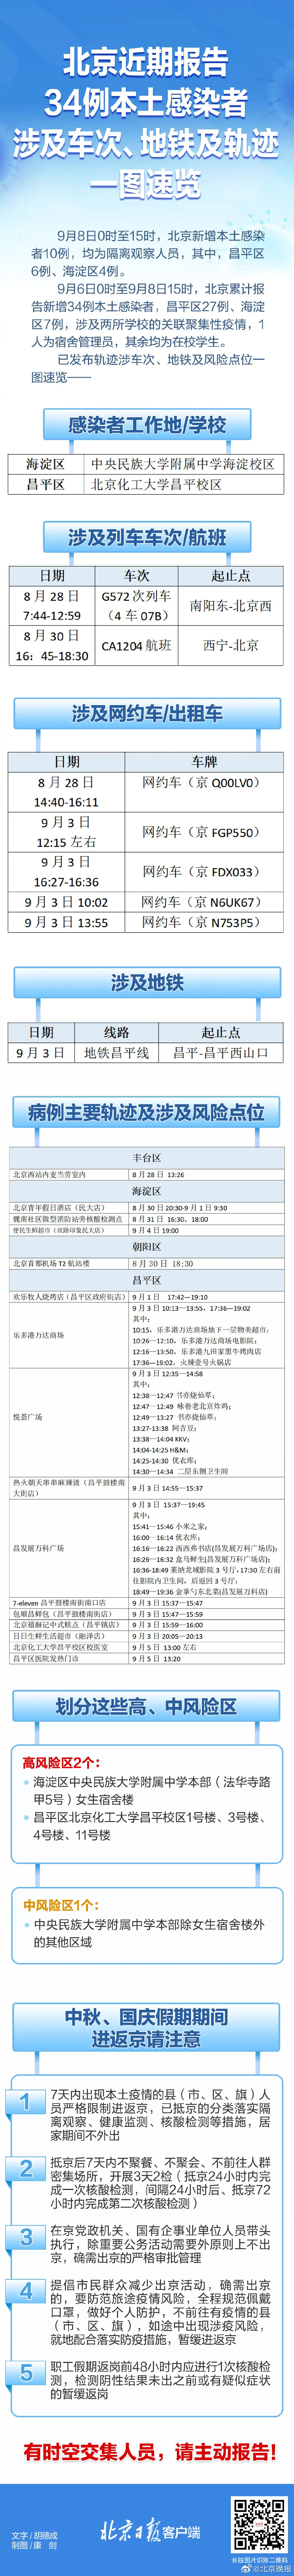 北京9月8日新增本土确诊17例 北京昨新增本土感染者无社会面